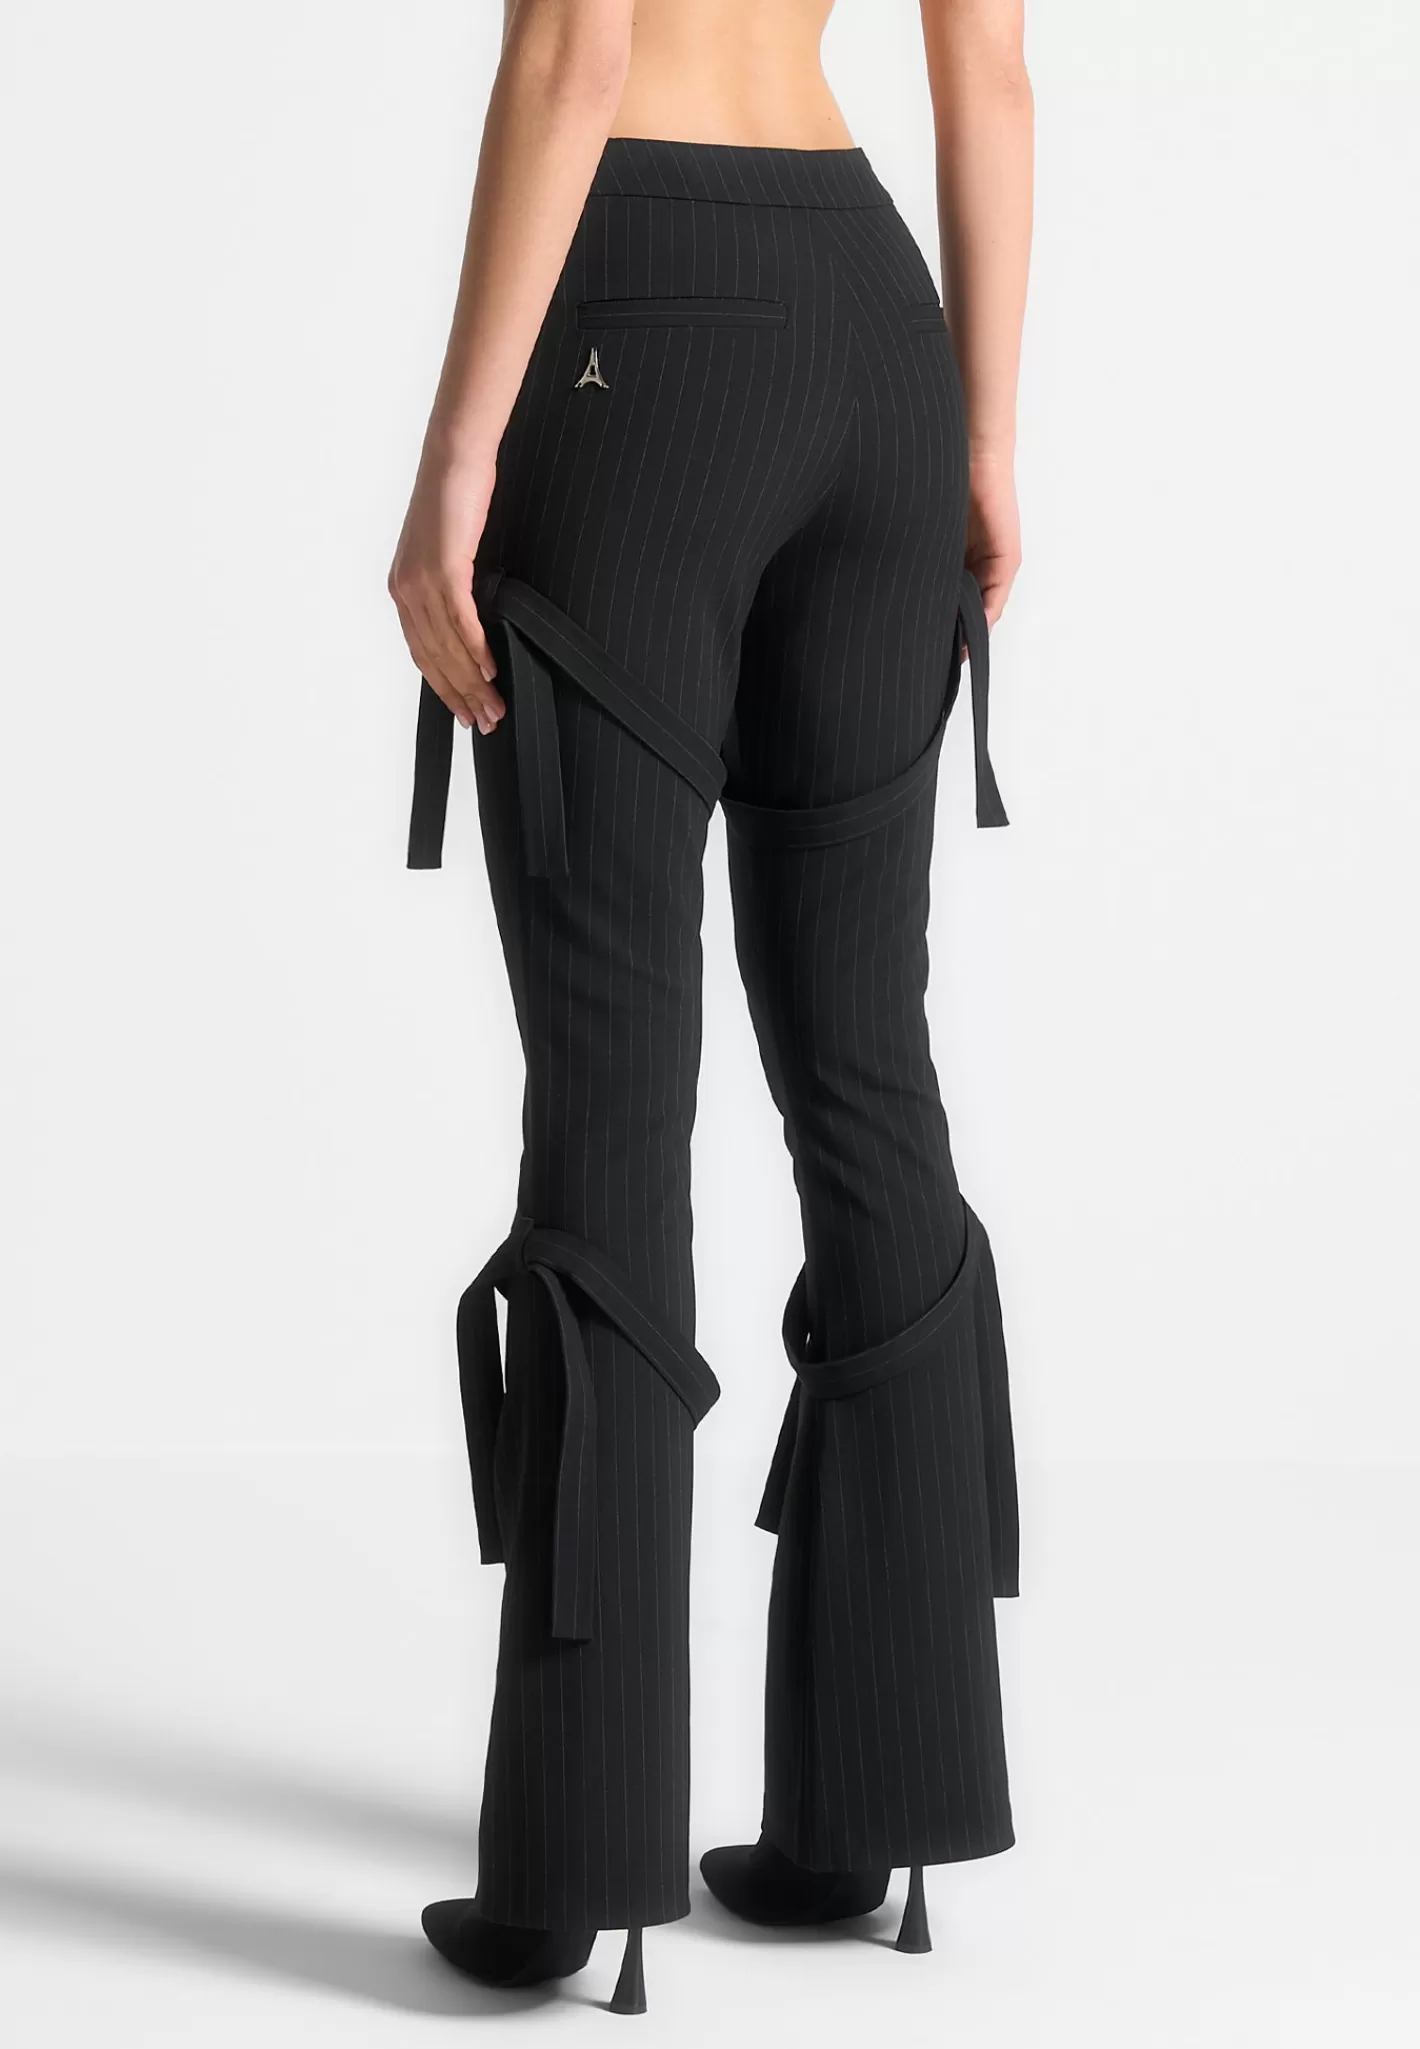 Strap Detail Pinstripe Fit and Flare Leggings - -Manière De Voir Fashion